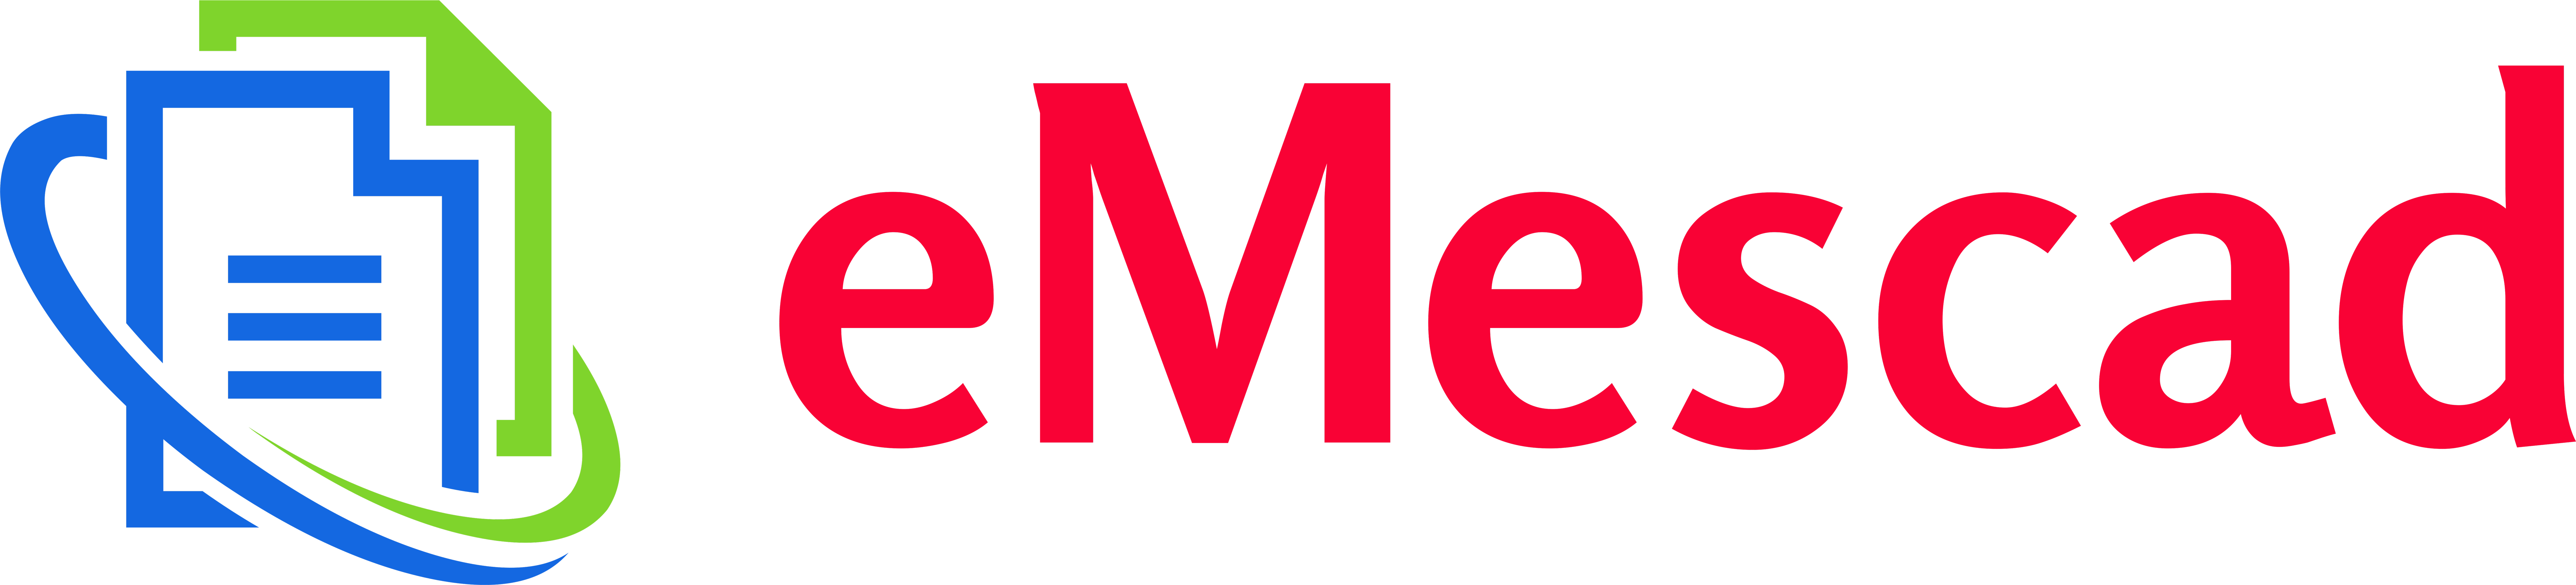 eMescad Logo